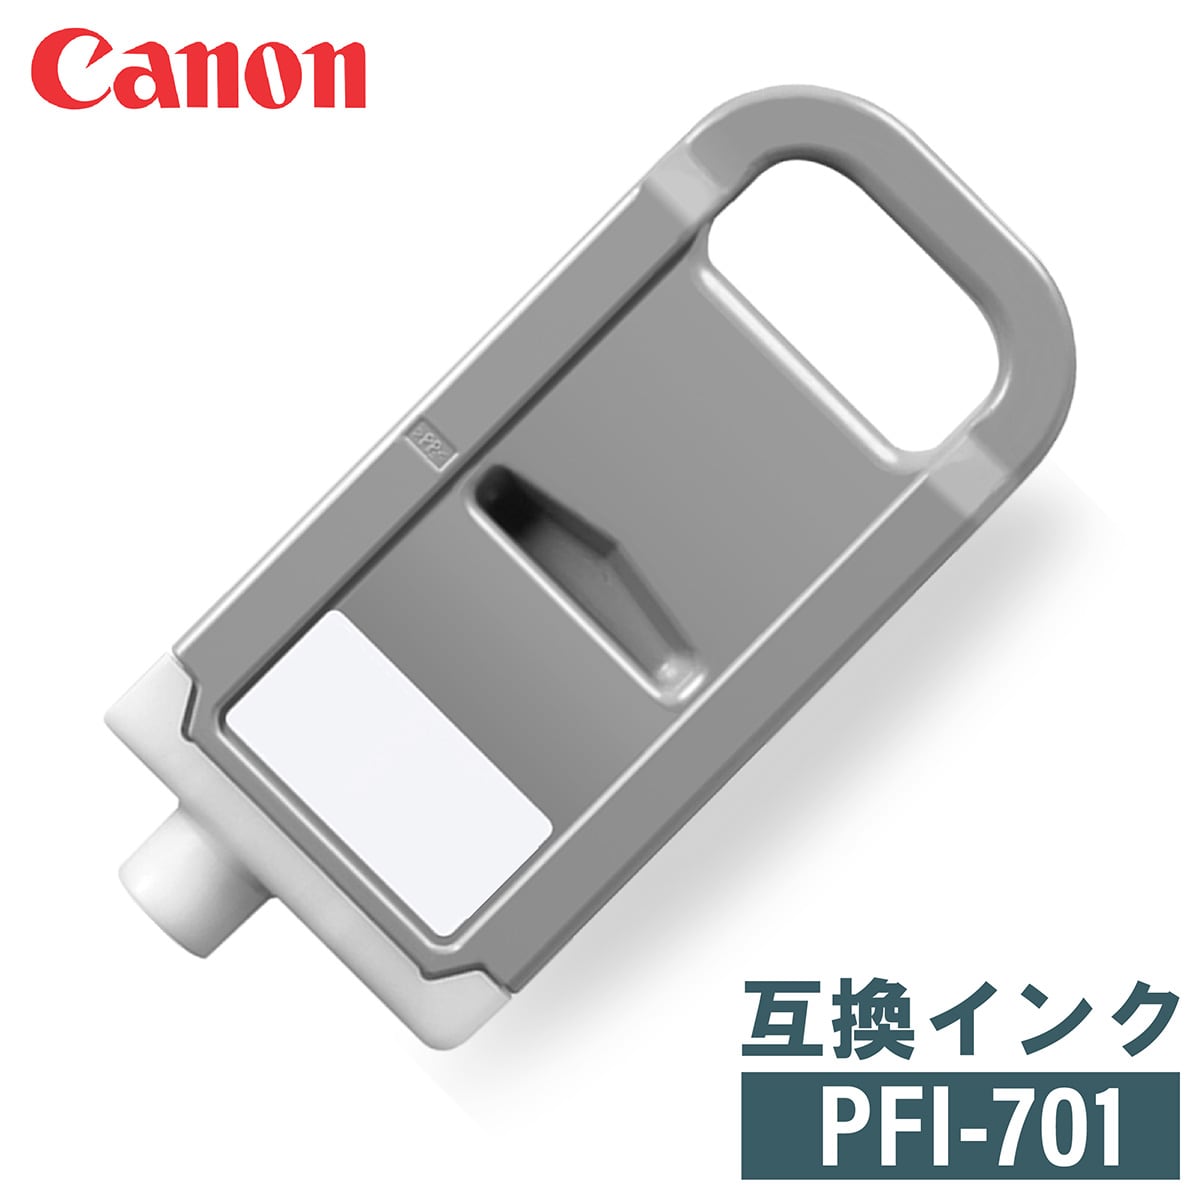 お買い得 純正 キヤノン インク PFI-701 Canon